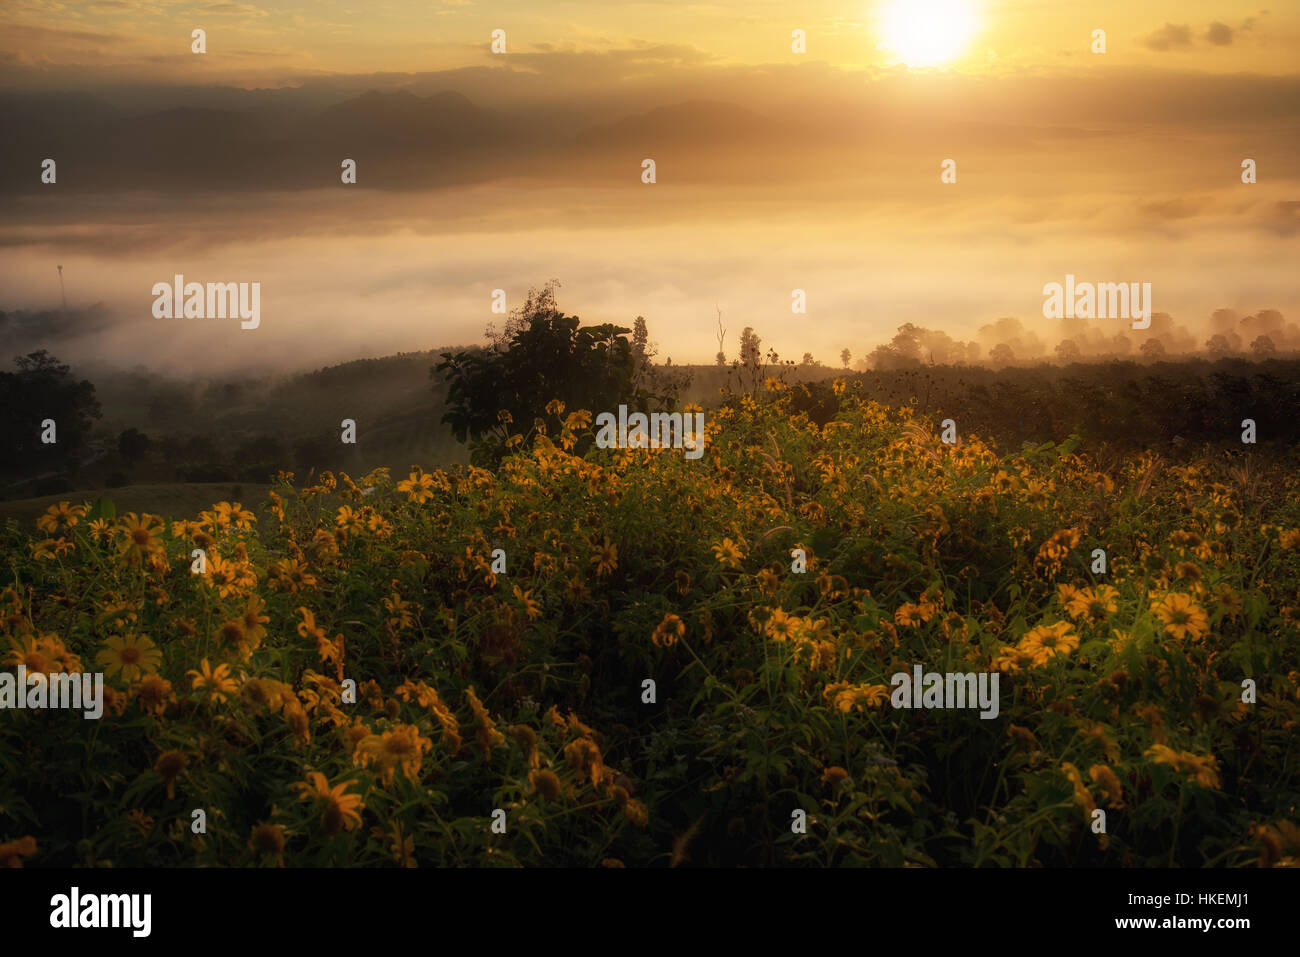 Bereich der gelbe mexikanische Sonnenblume Unkraut auf Berg mit Nebel und Sonne morgen in Thailand. Stockfoto